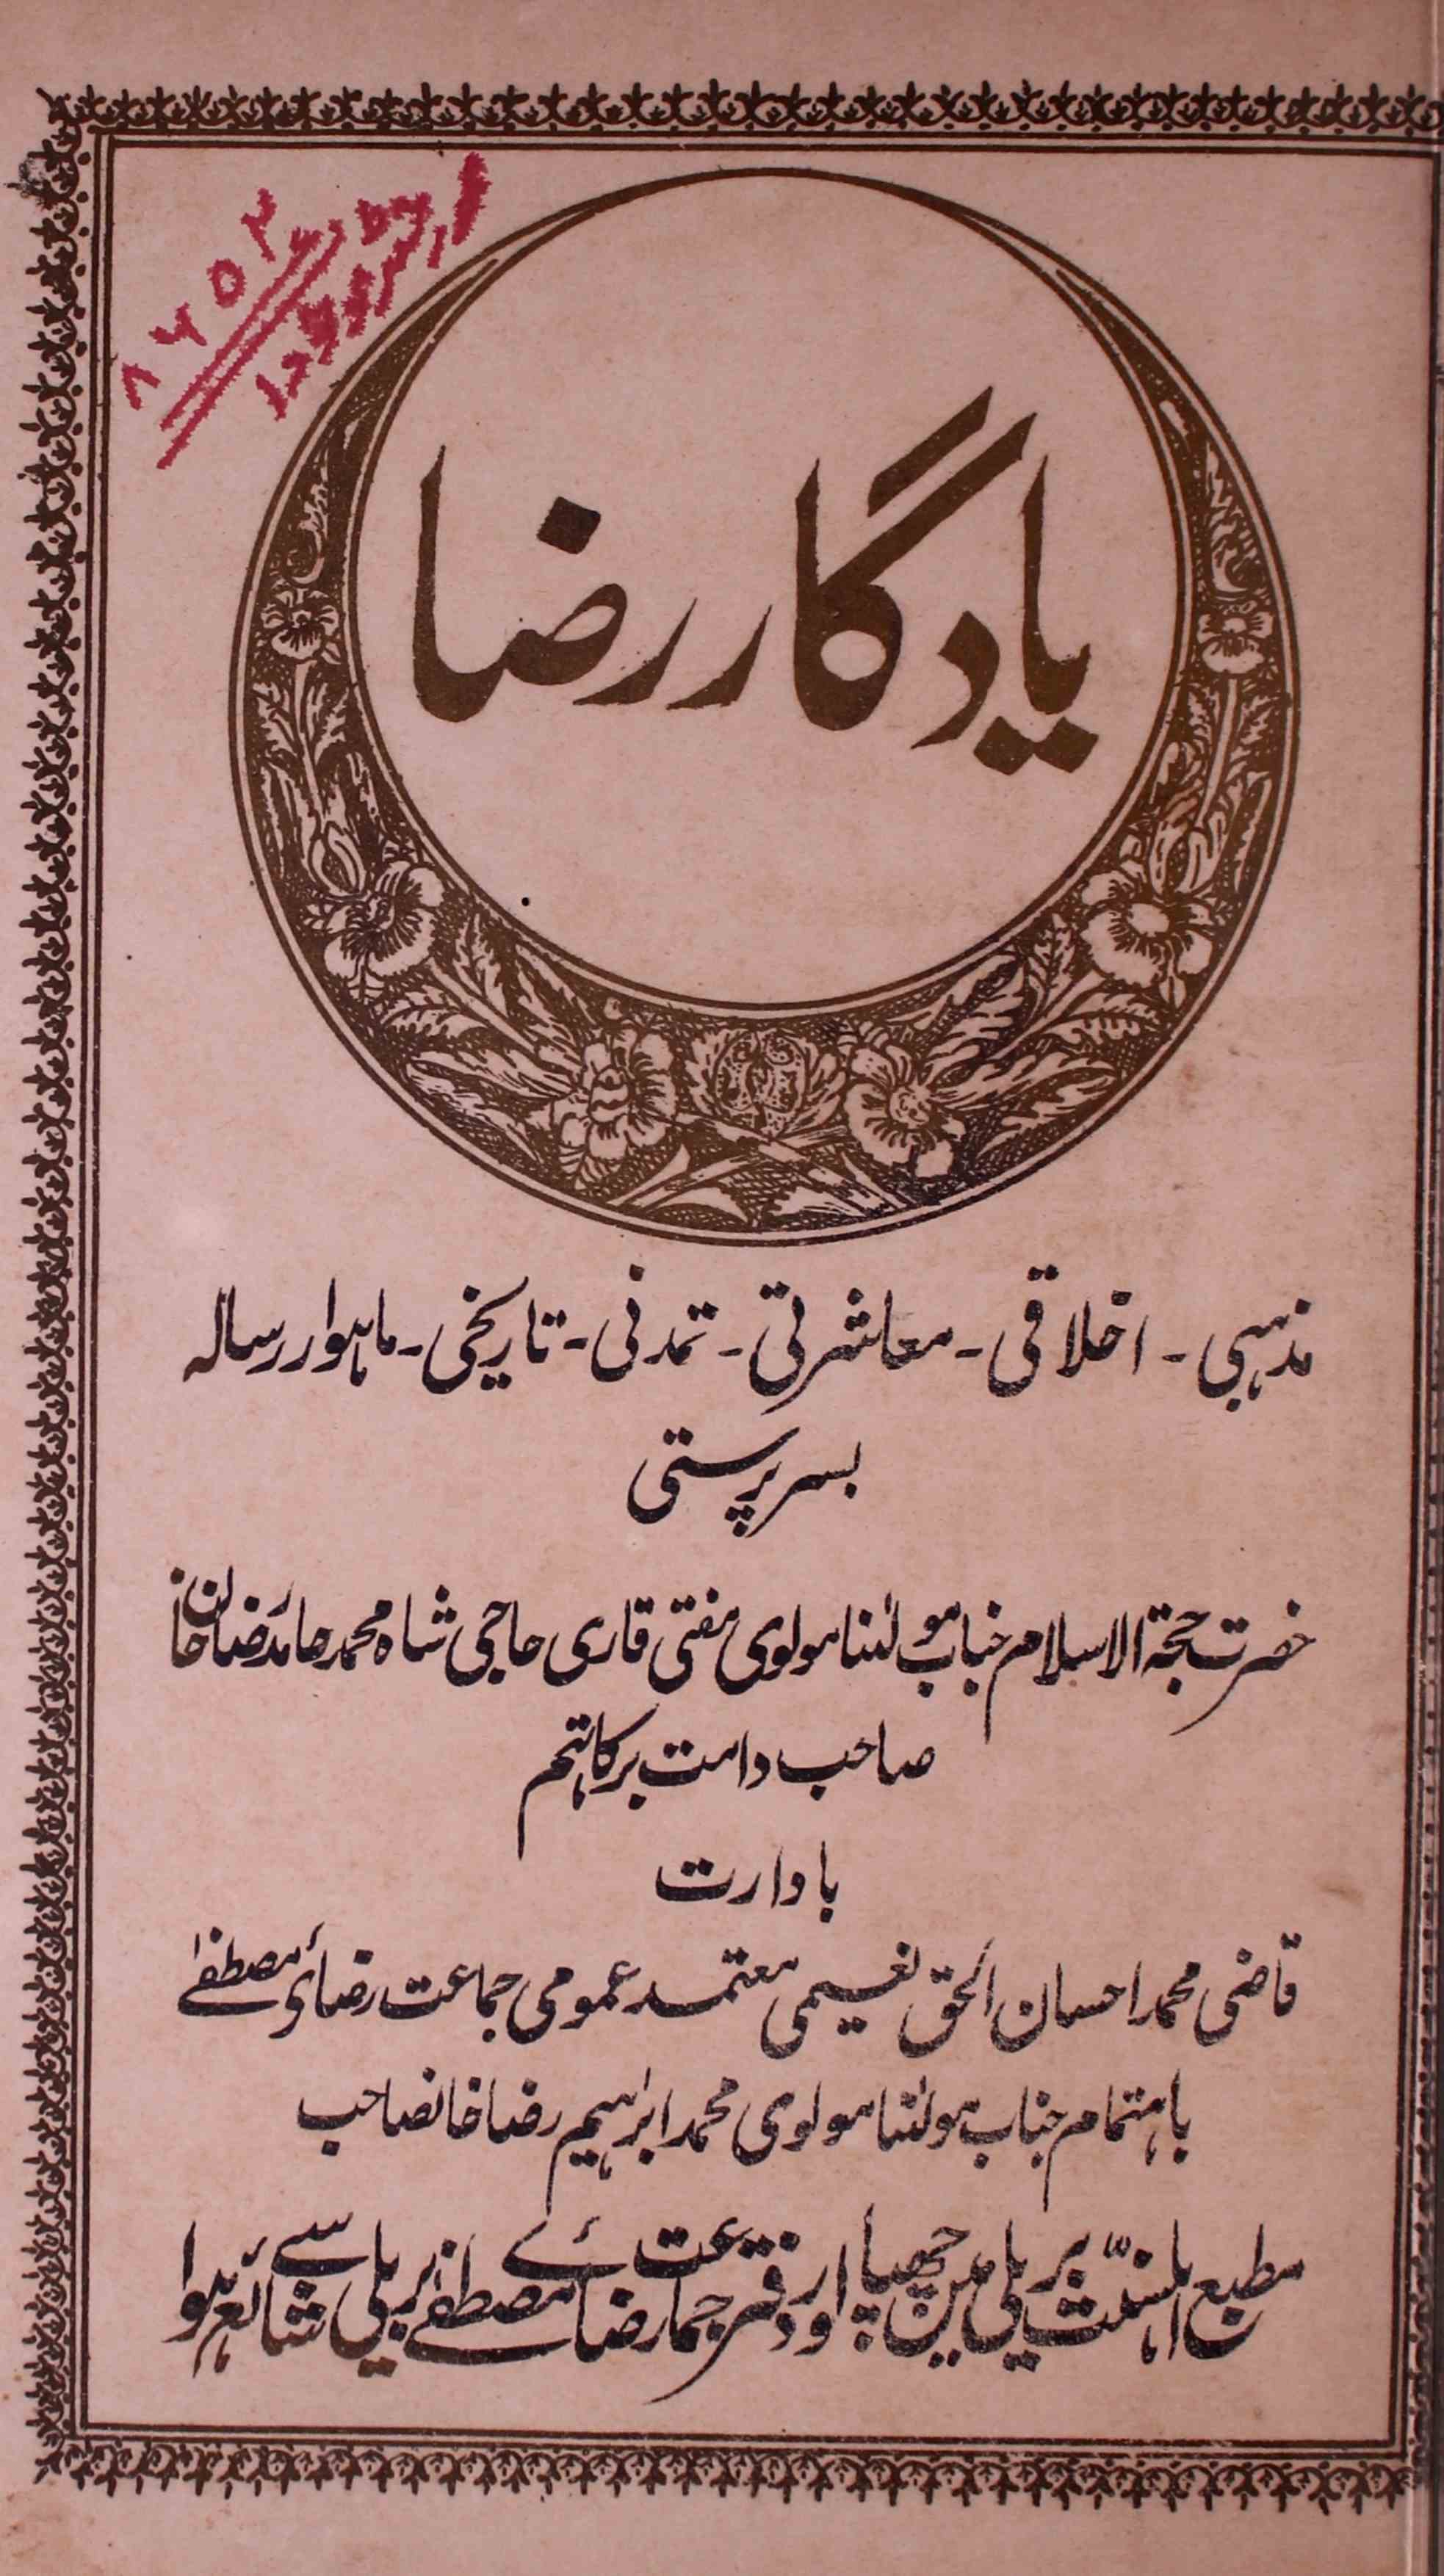 Yadgar e Raza Jild 1 No. 1 Rabi ul awwal 1345 Hijri-Shumara Number-001